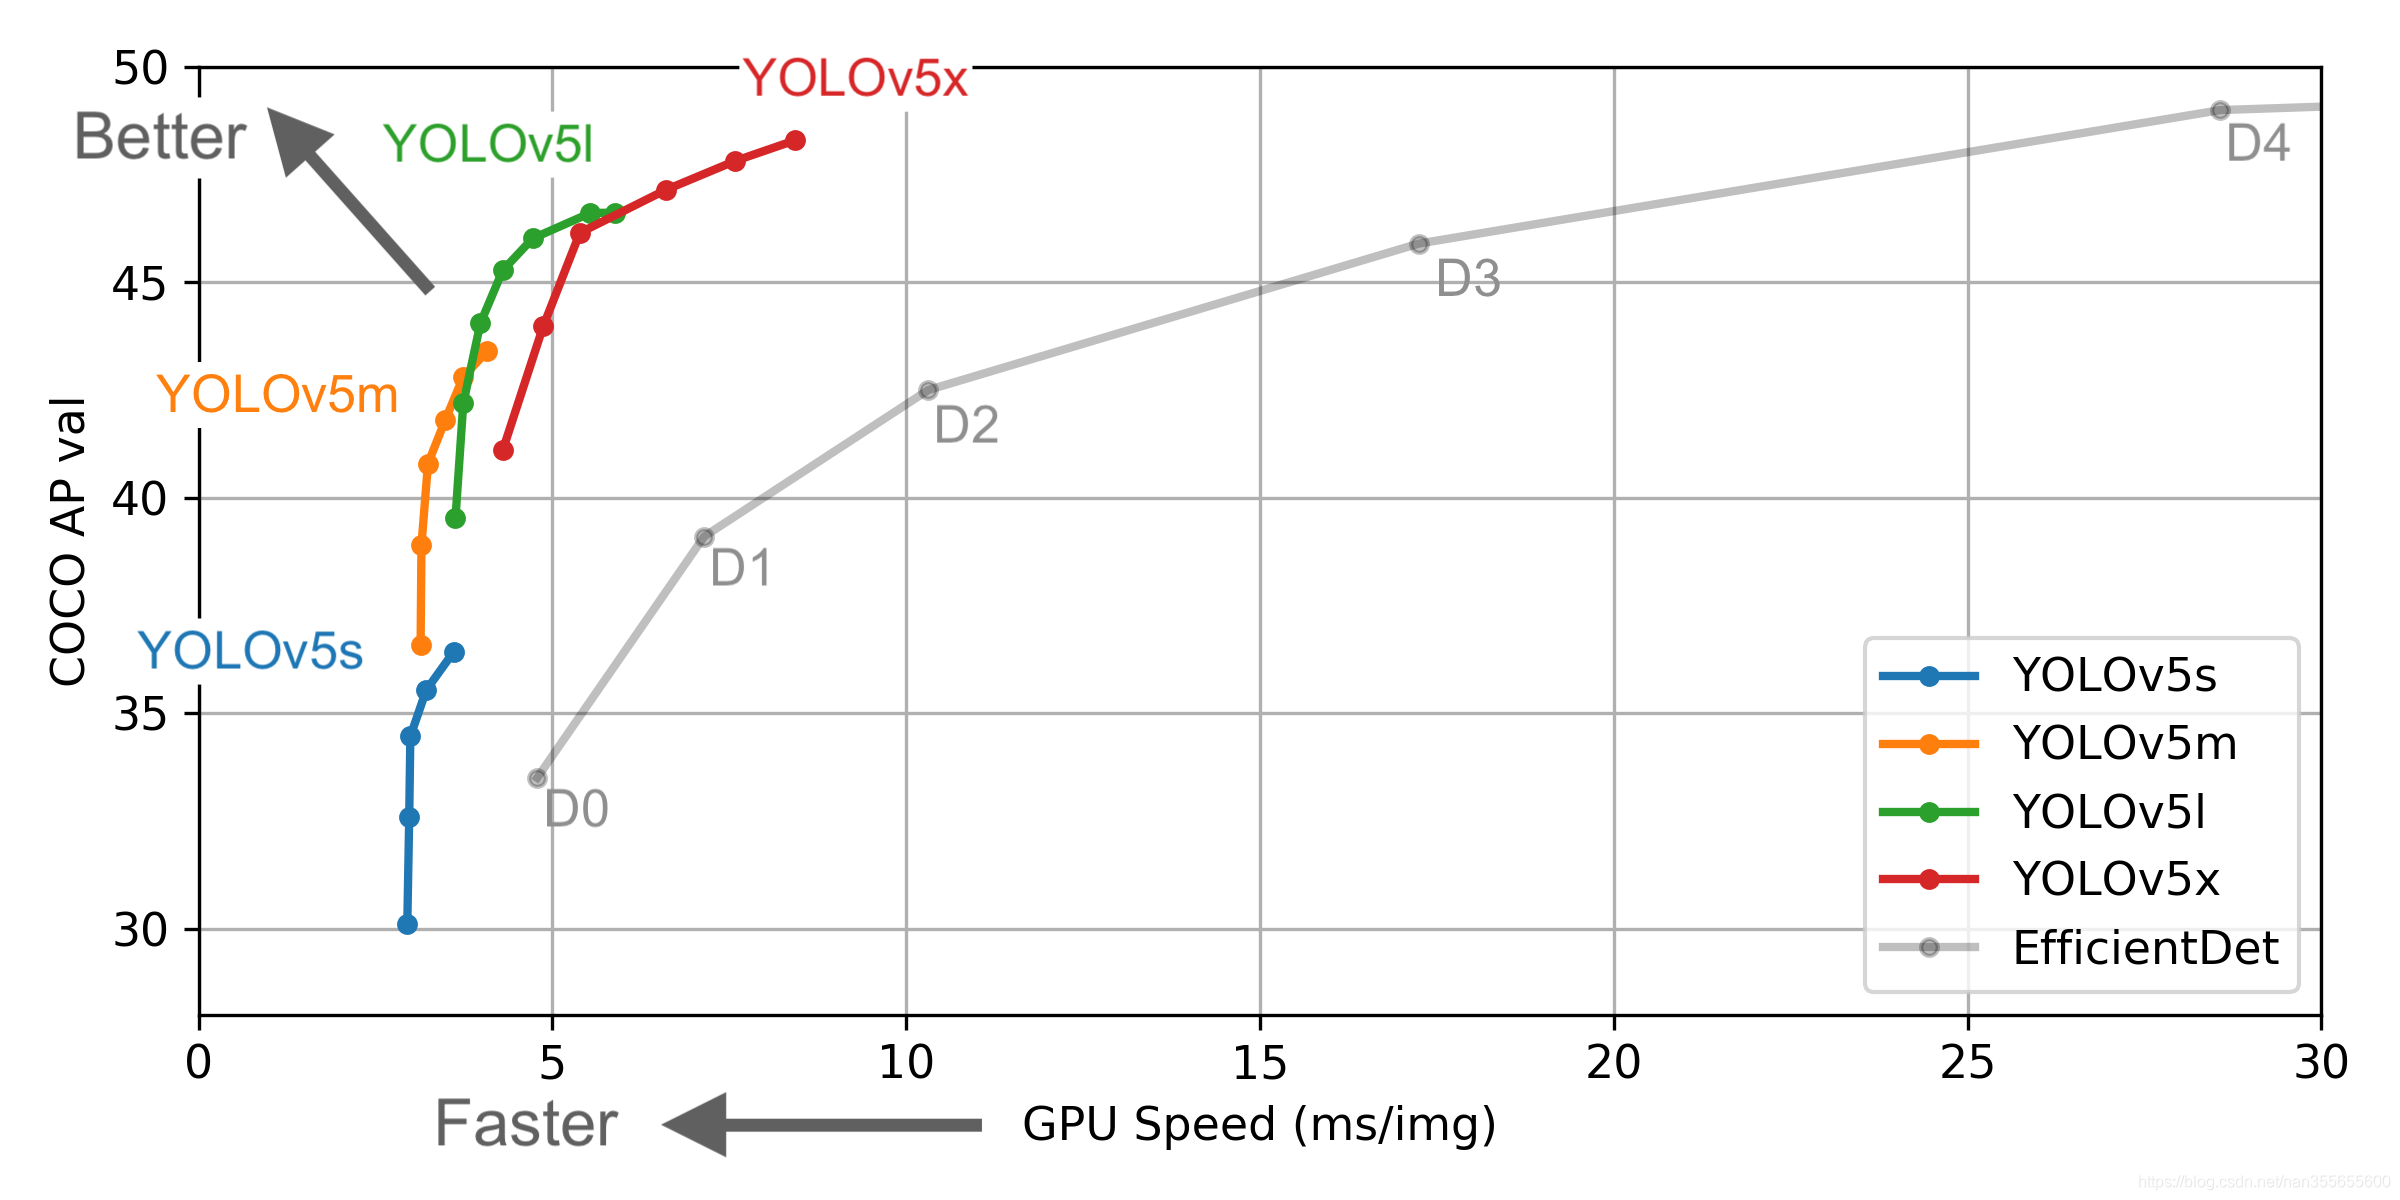 深入浅出Yolo系列之Yolov5核心基础知识完整讲解江南研习社-yolov5